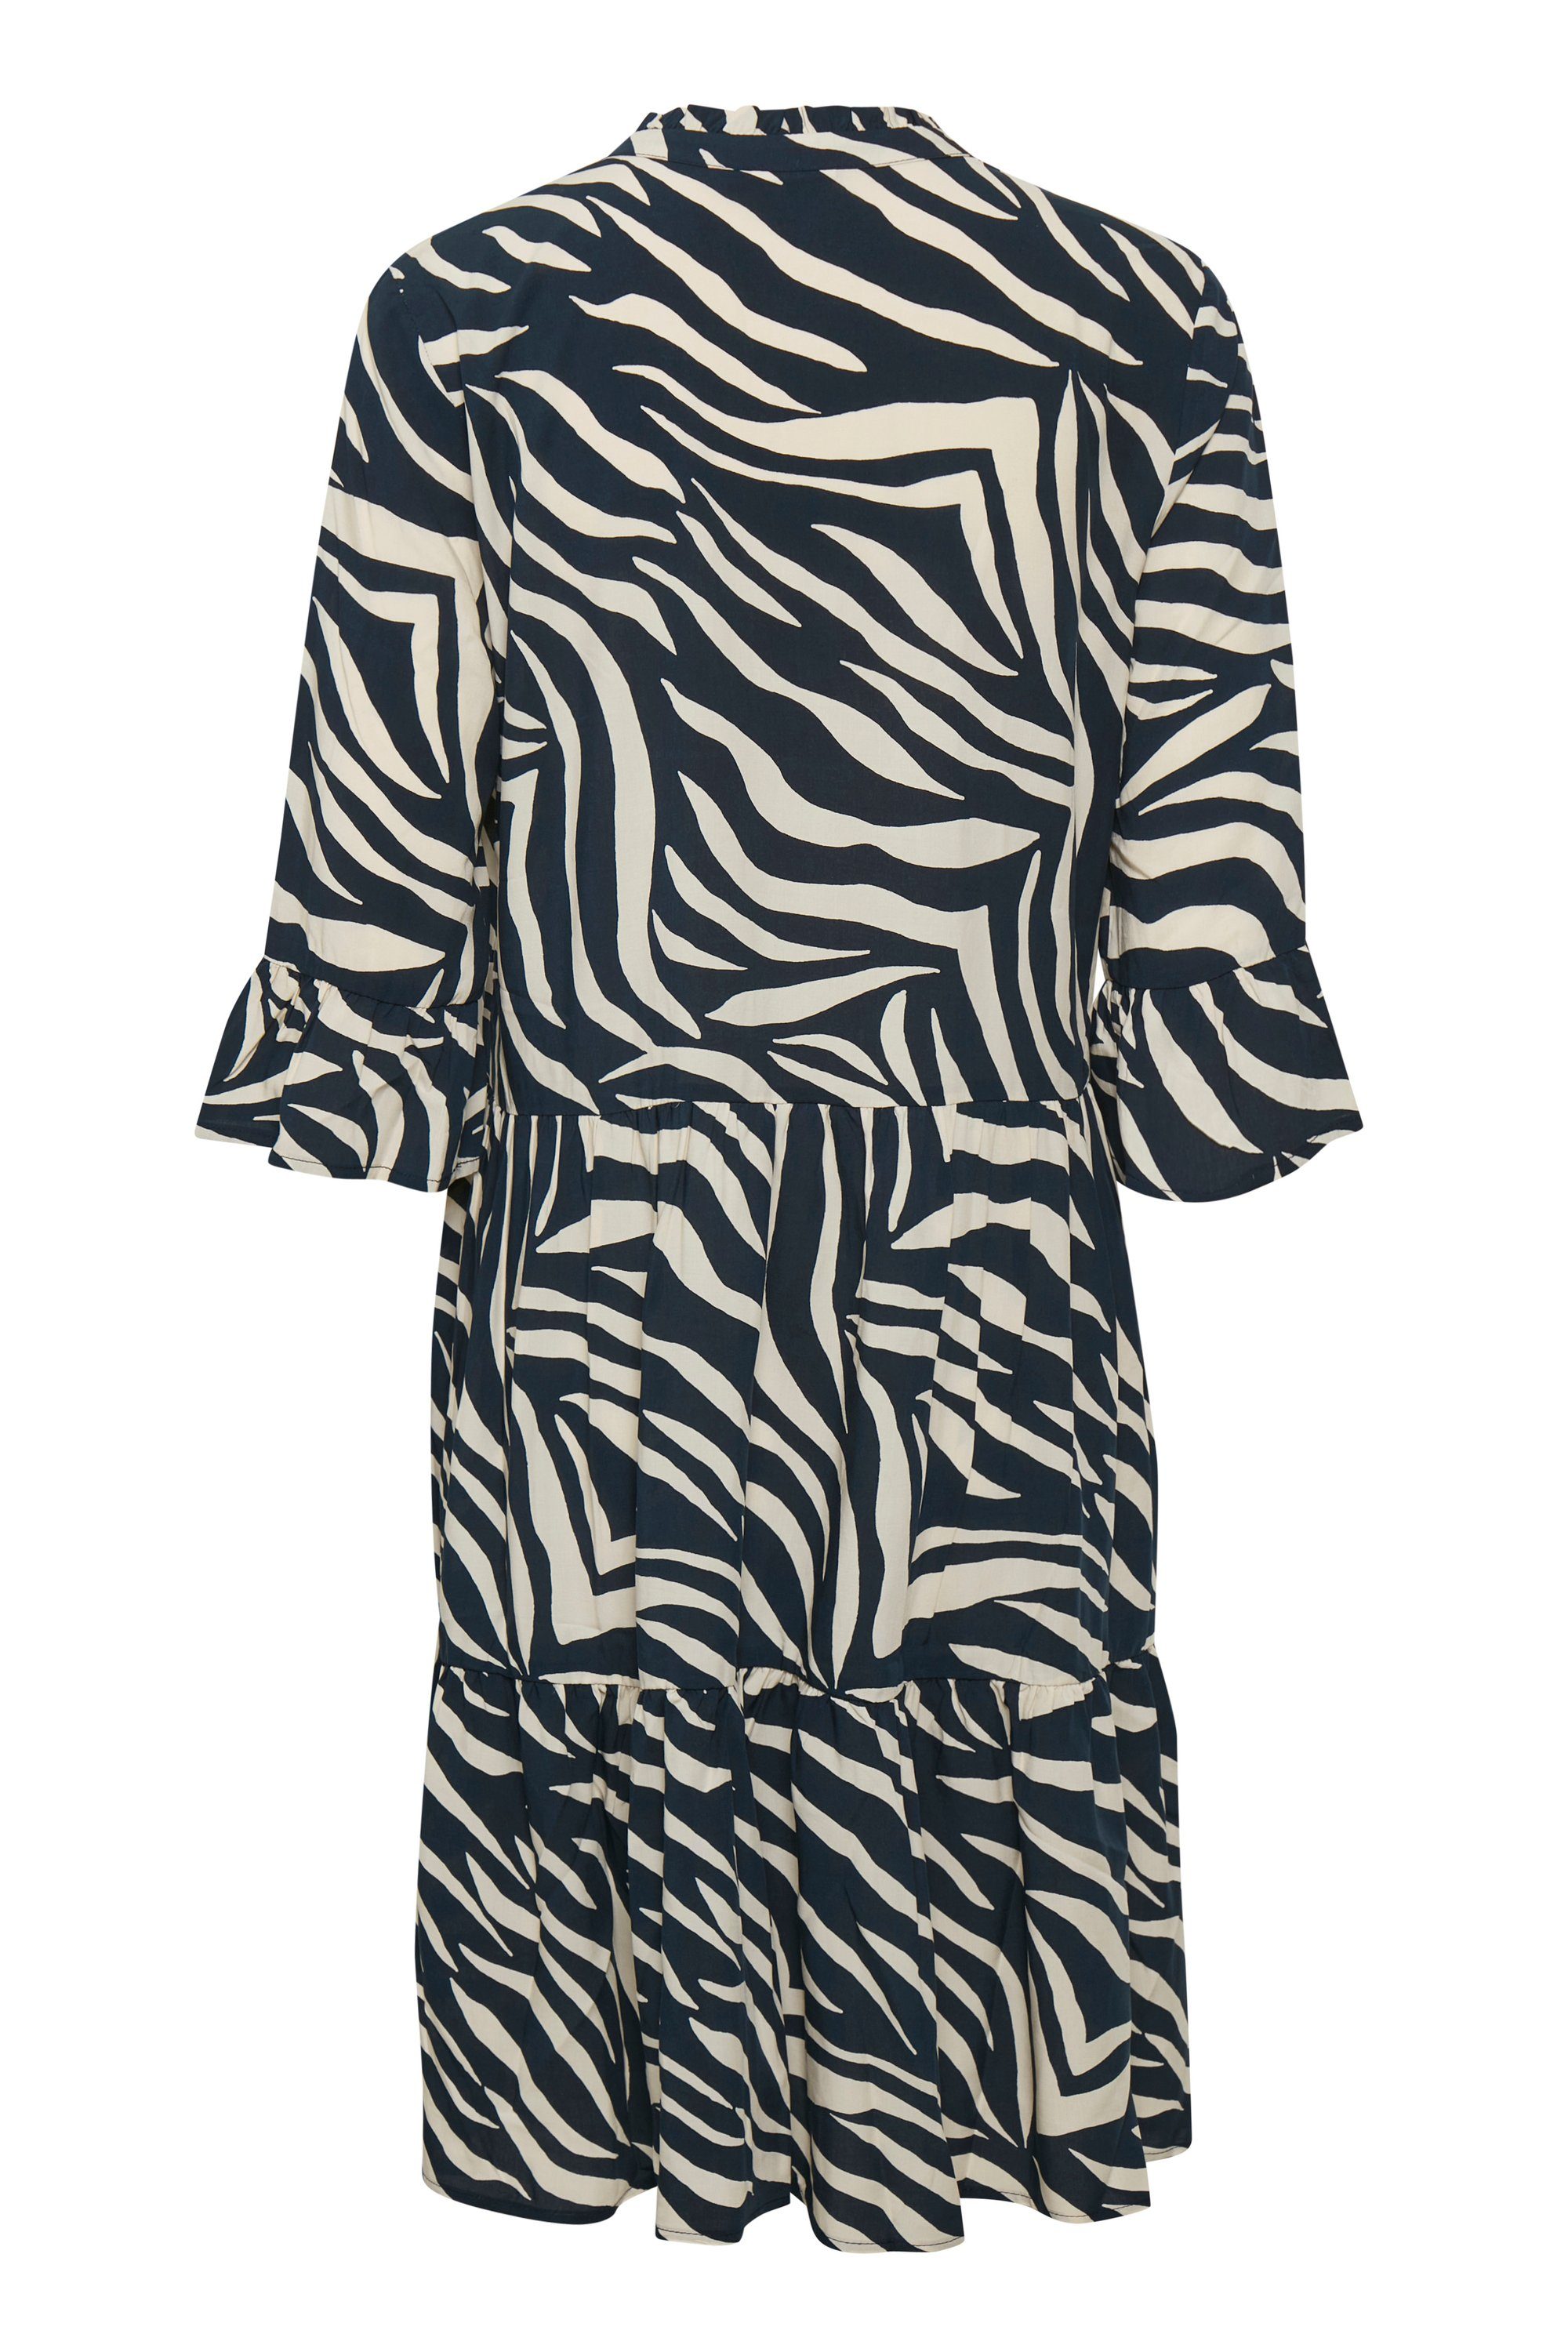 Saint Total Dress Eclipse Zebra EdaSZ Jerseykleid Skin Tropez